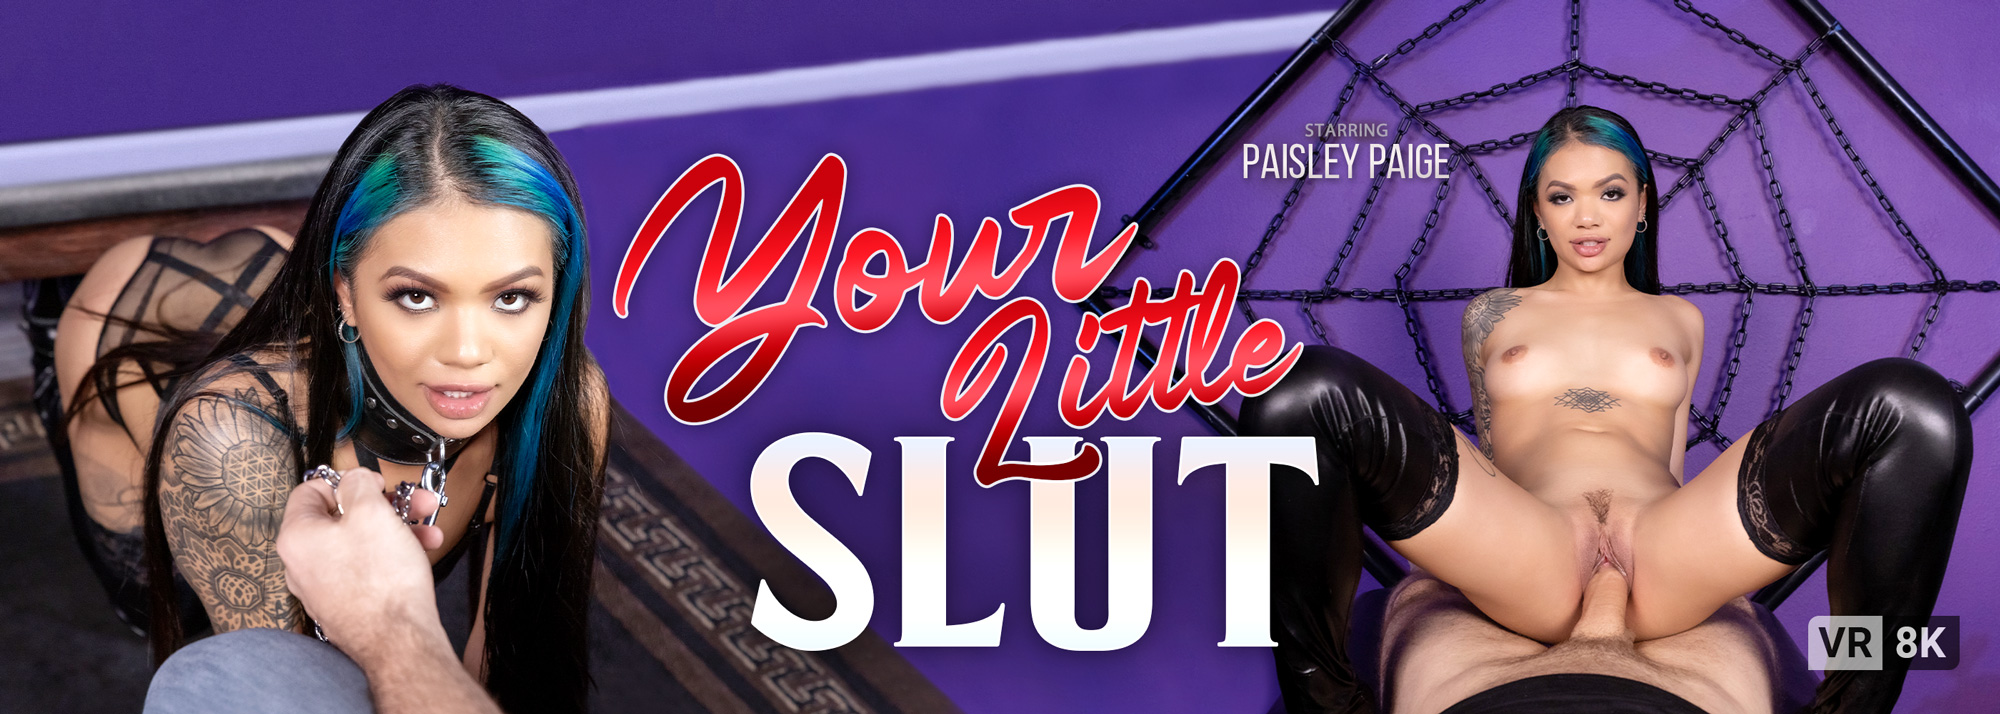 Your Little Slut with Paisley Paige  Slideshow